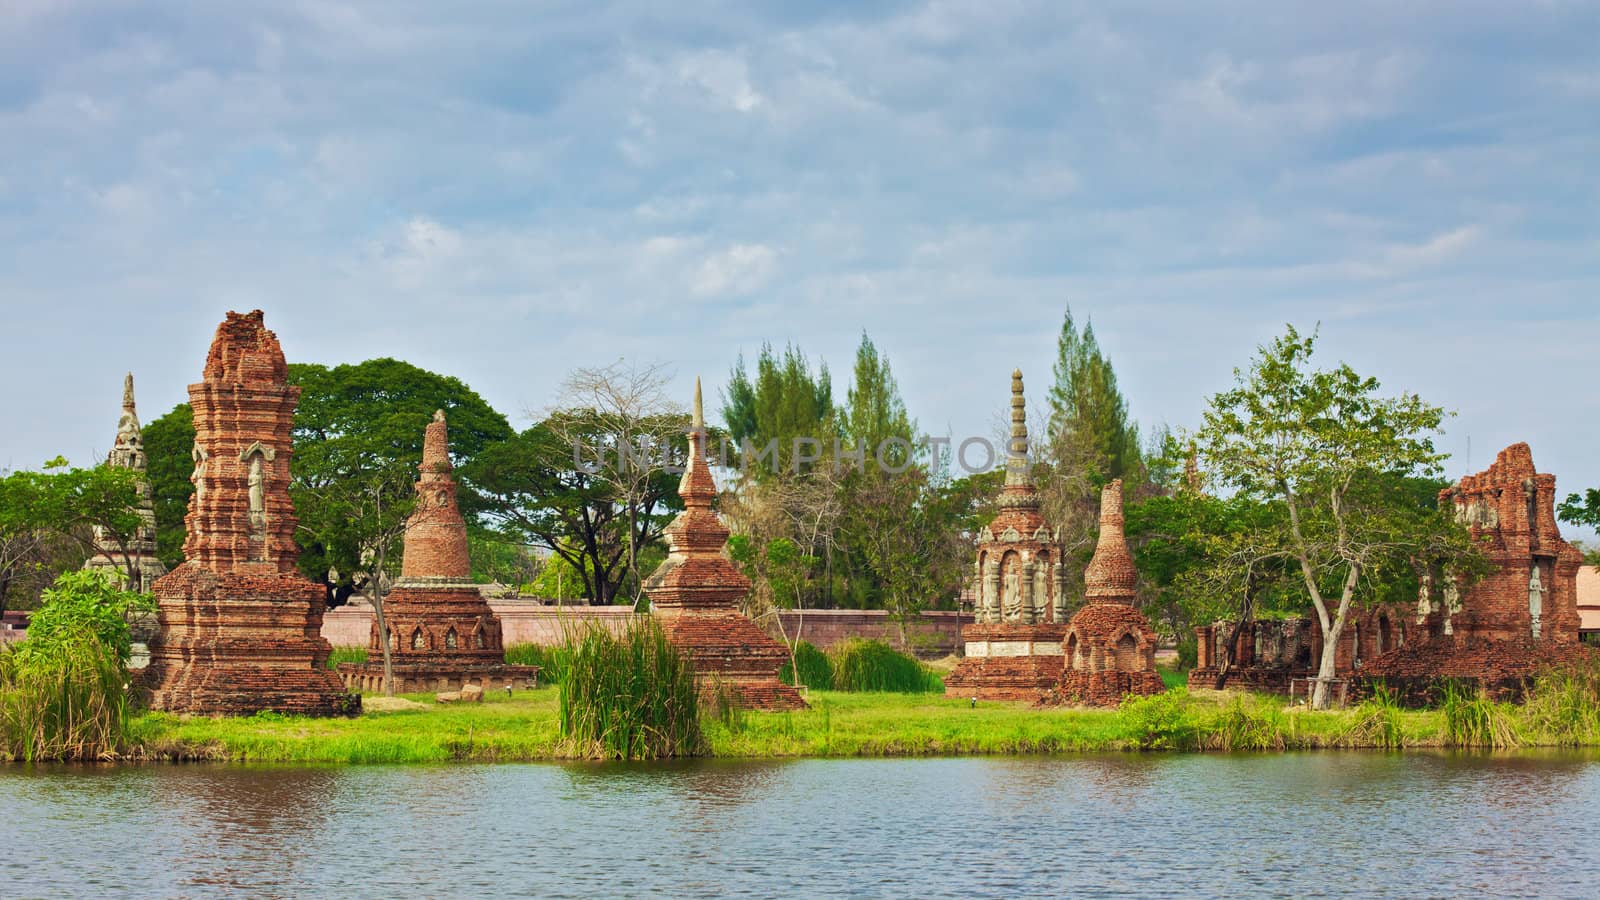 ruins in Mueang Boran, aka Ancient Siam, Bangkok, Thailand